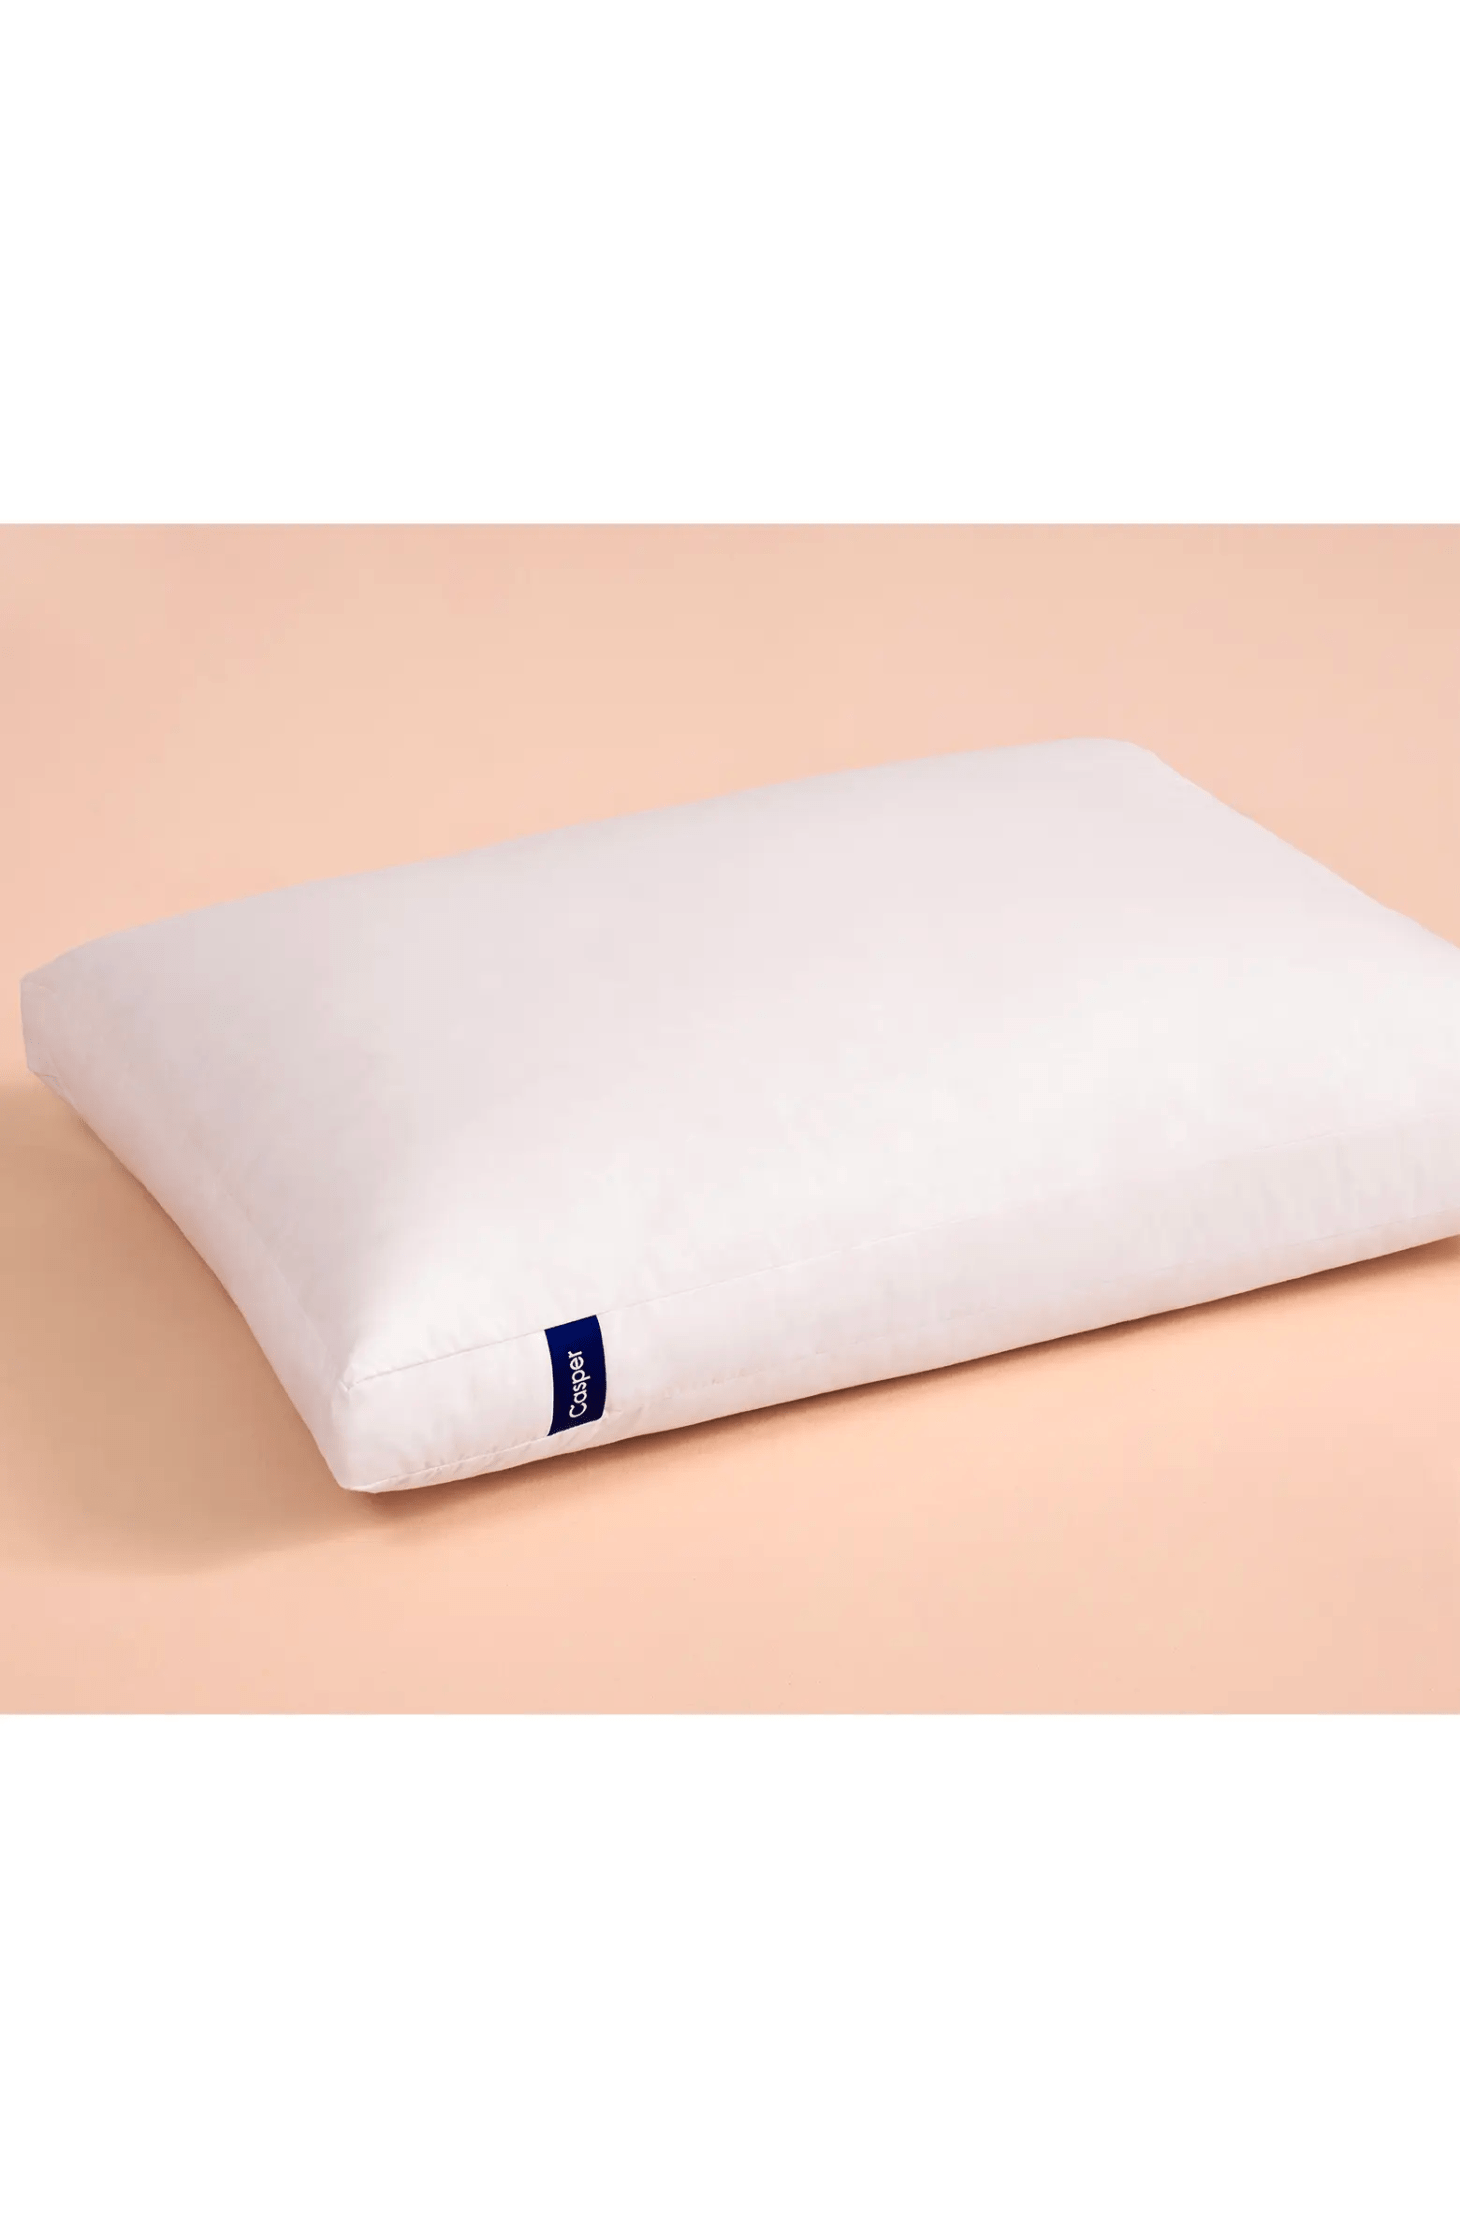 casper pillow